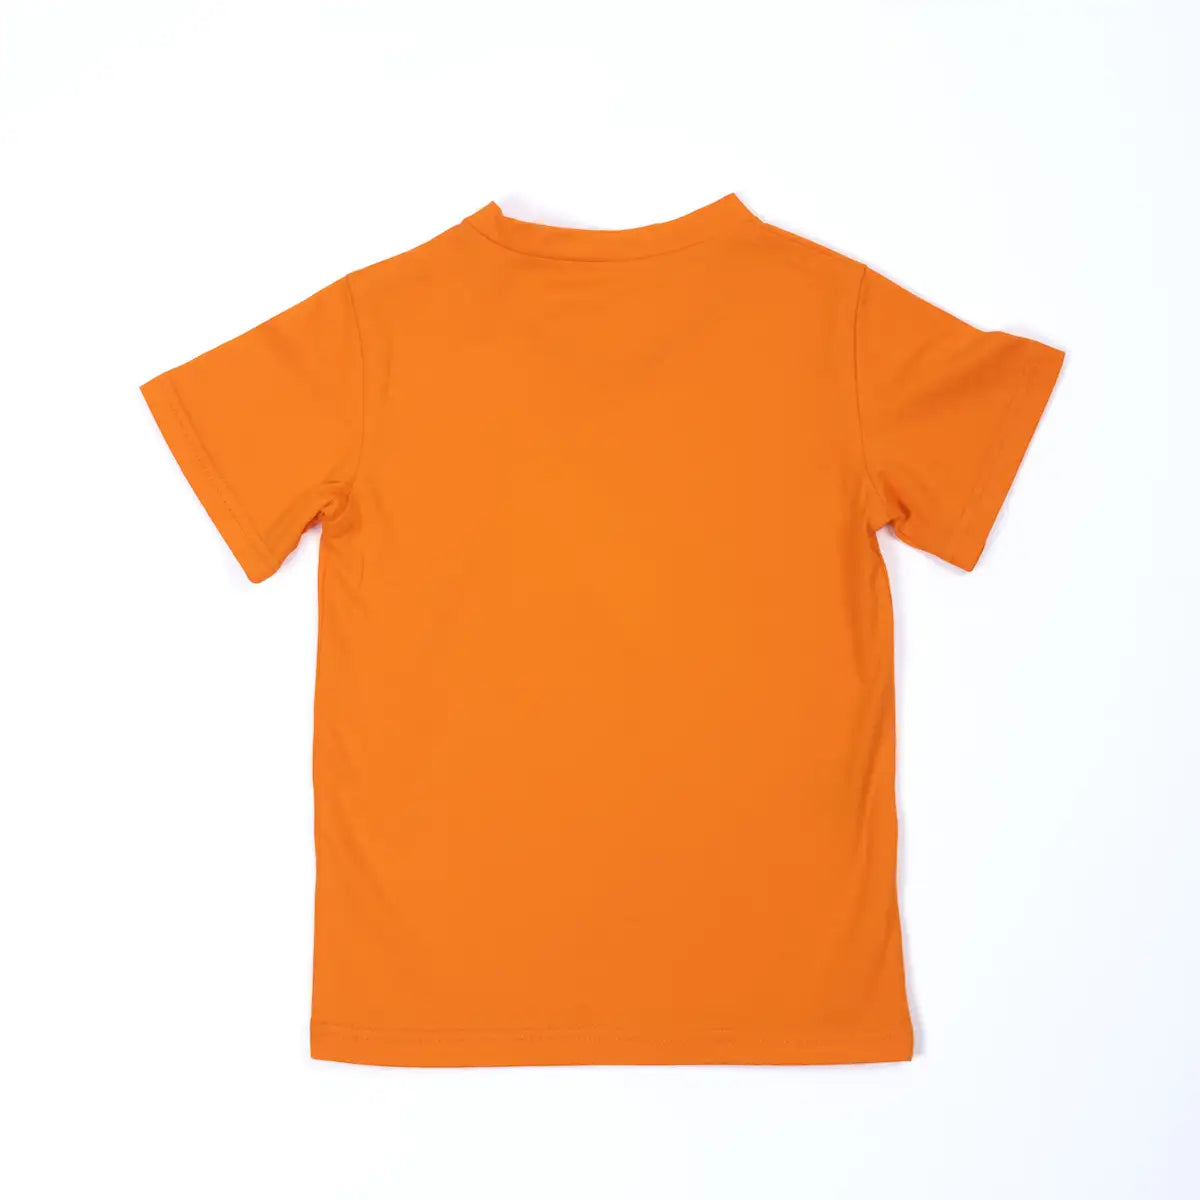 Unisex pauakids T-Shirt orange, Biobaumwolle, Rückenansicht